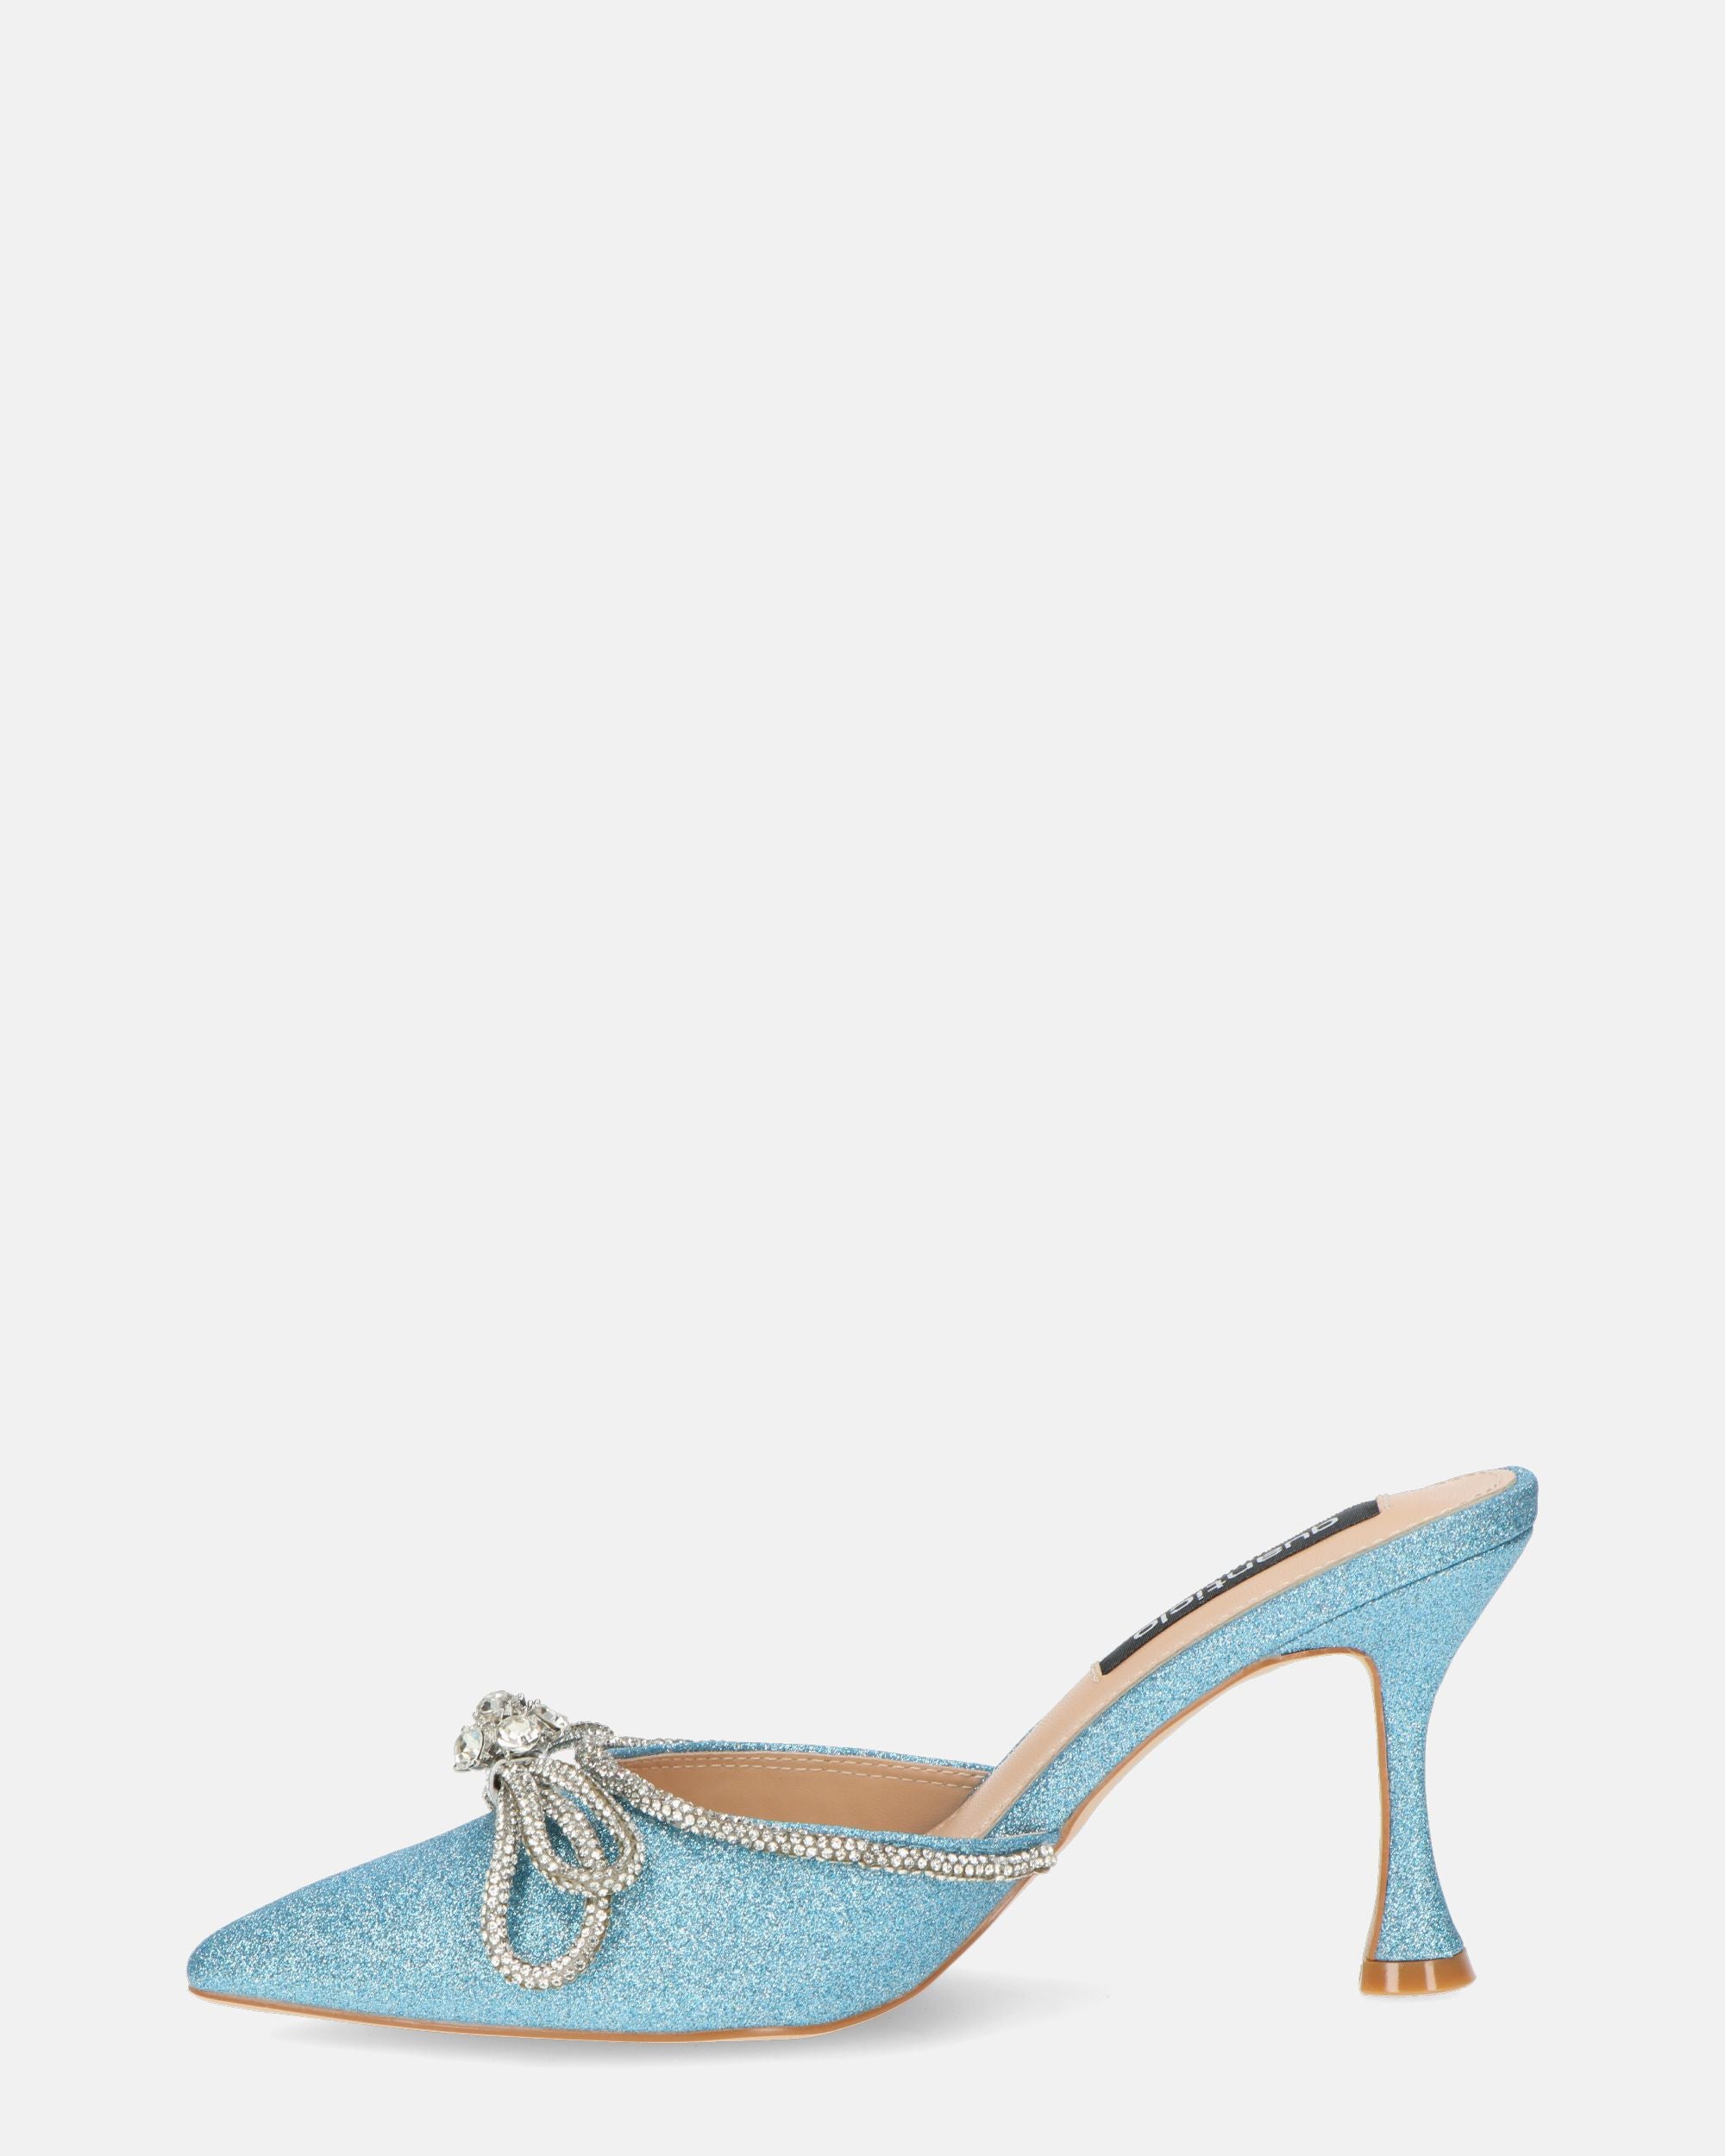 TABBY - scarpe in glitter azzurro con fiocco di gemme